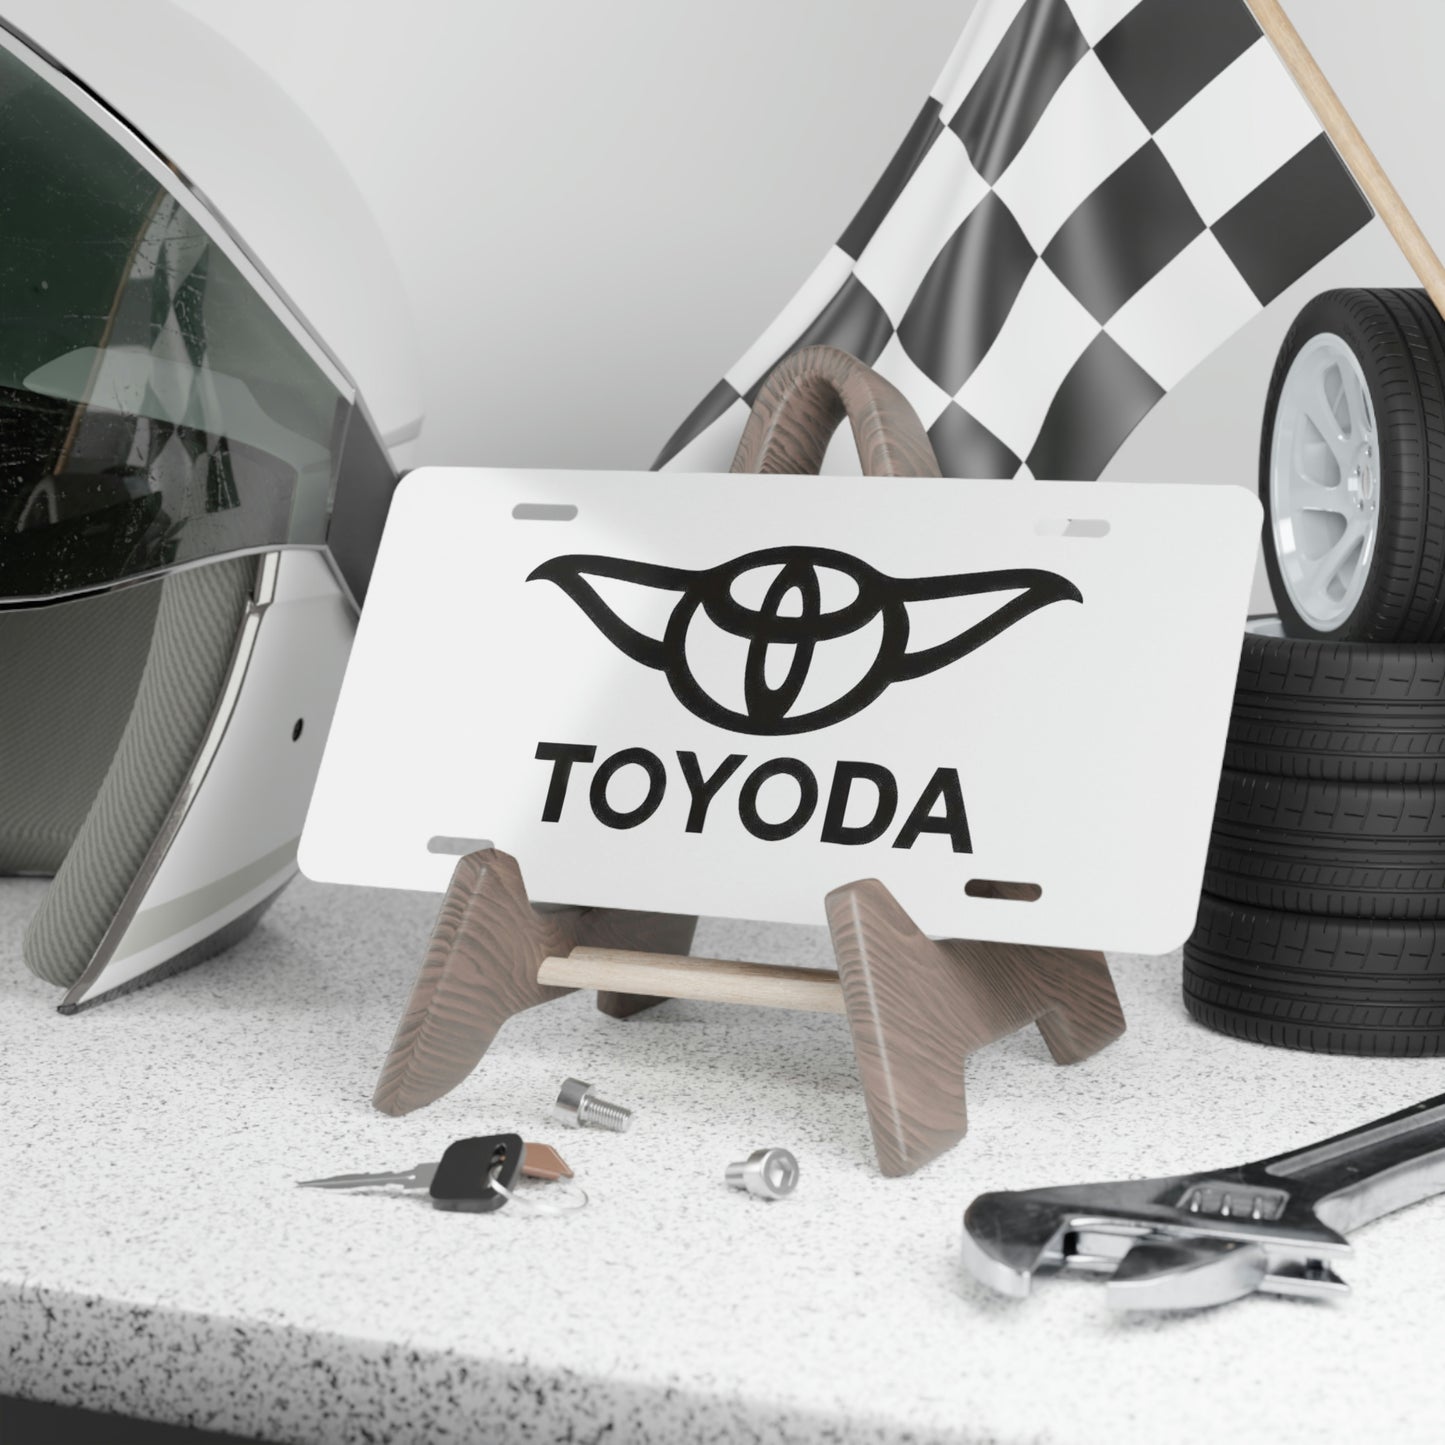 Toyoda - Toyota Vanity License Plate